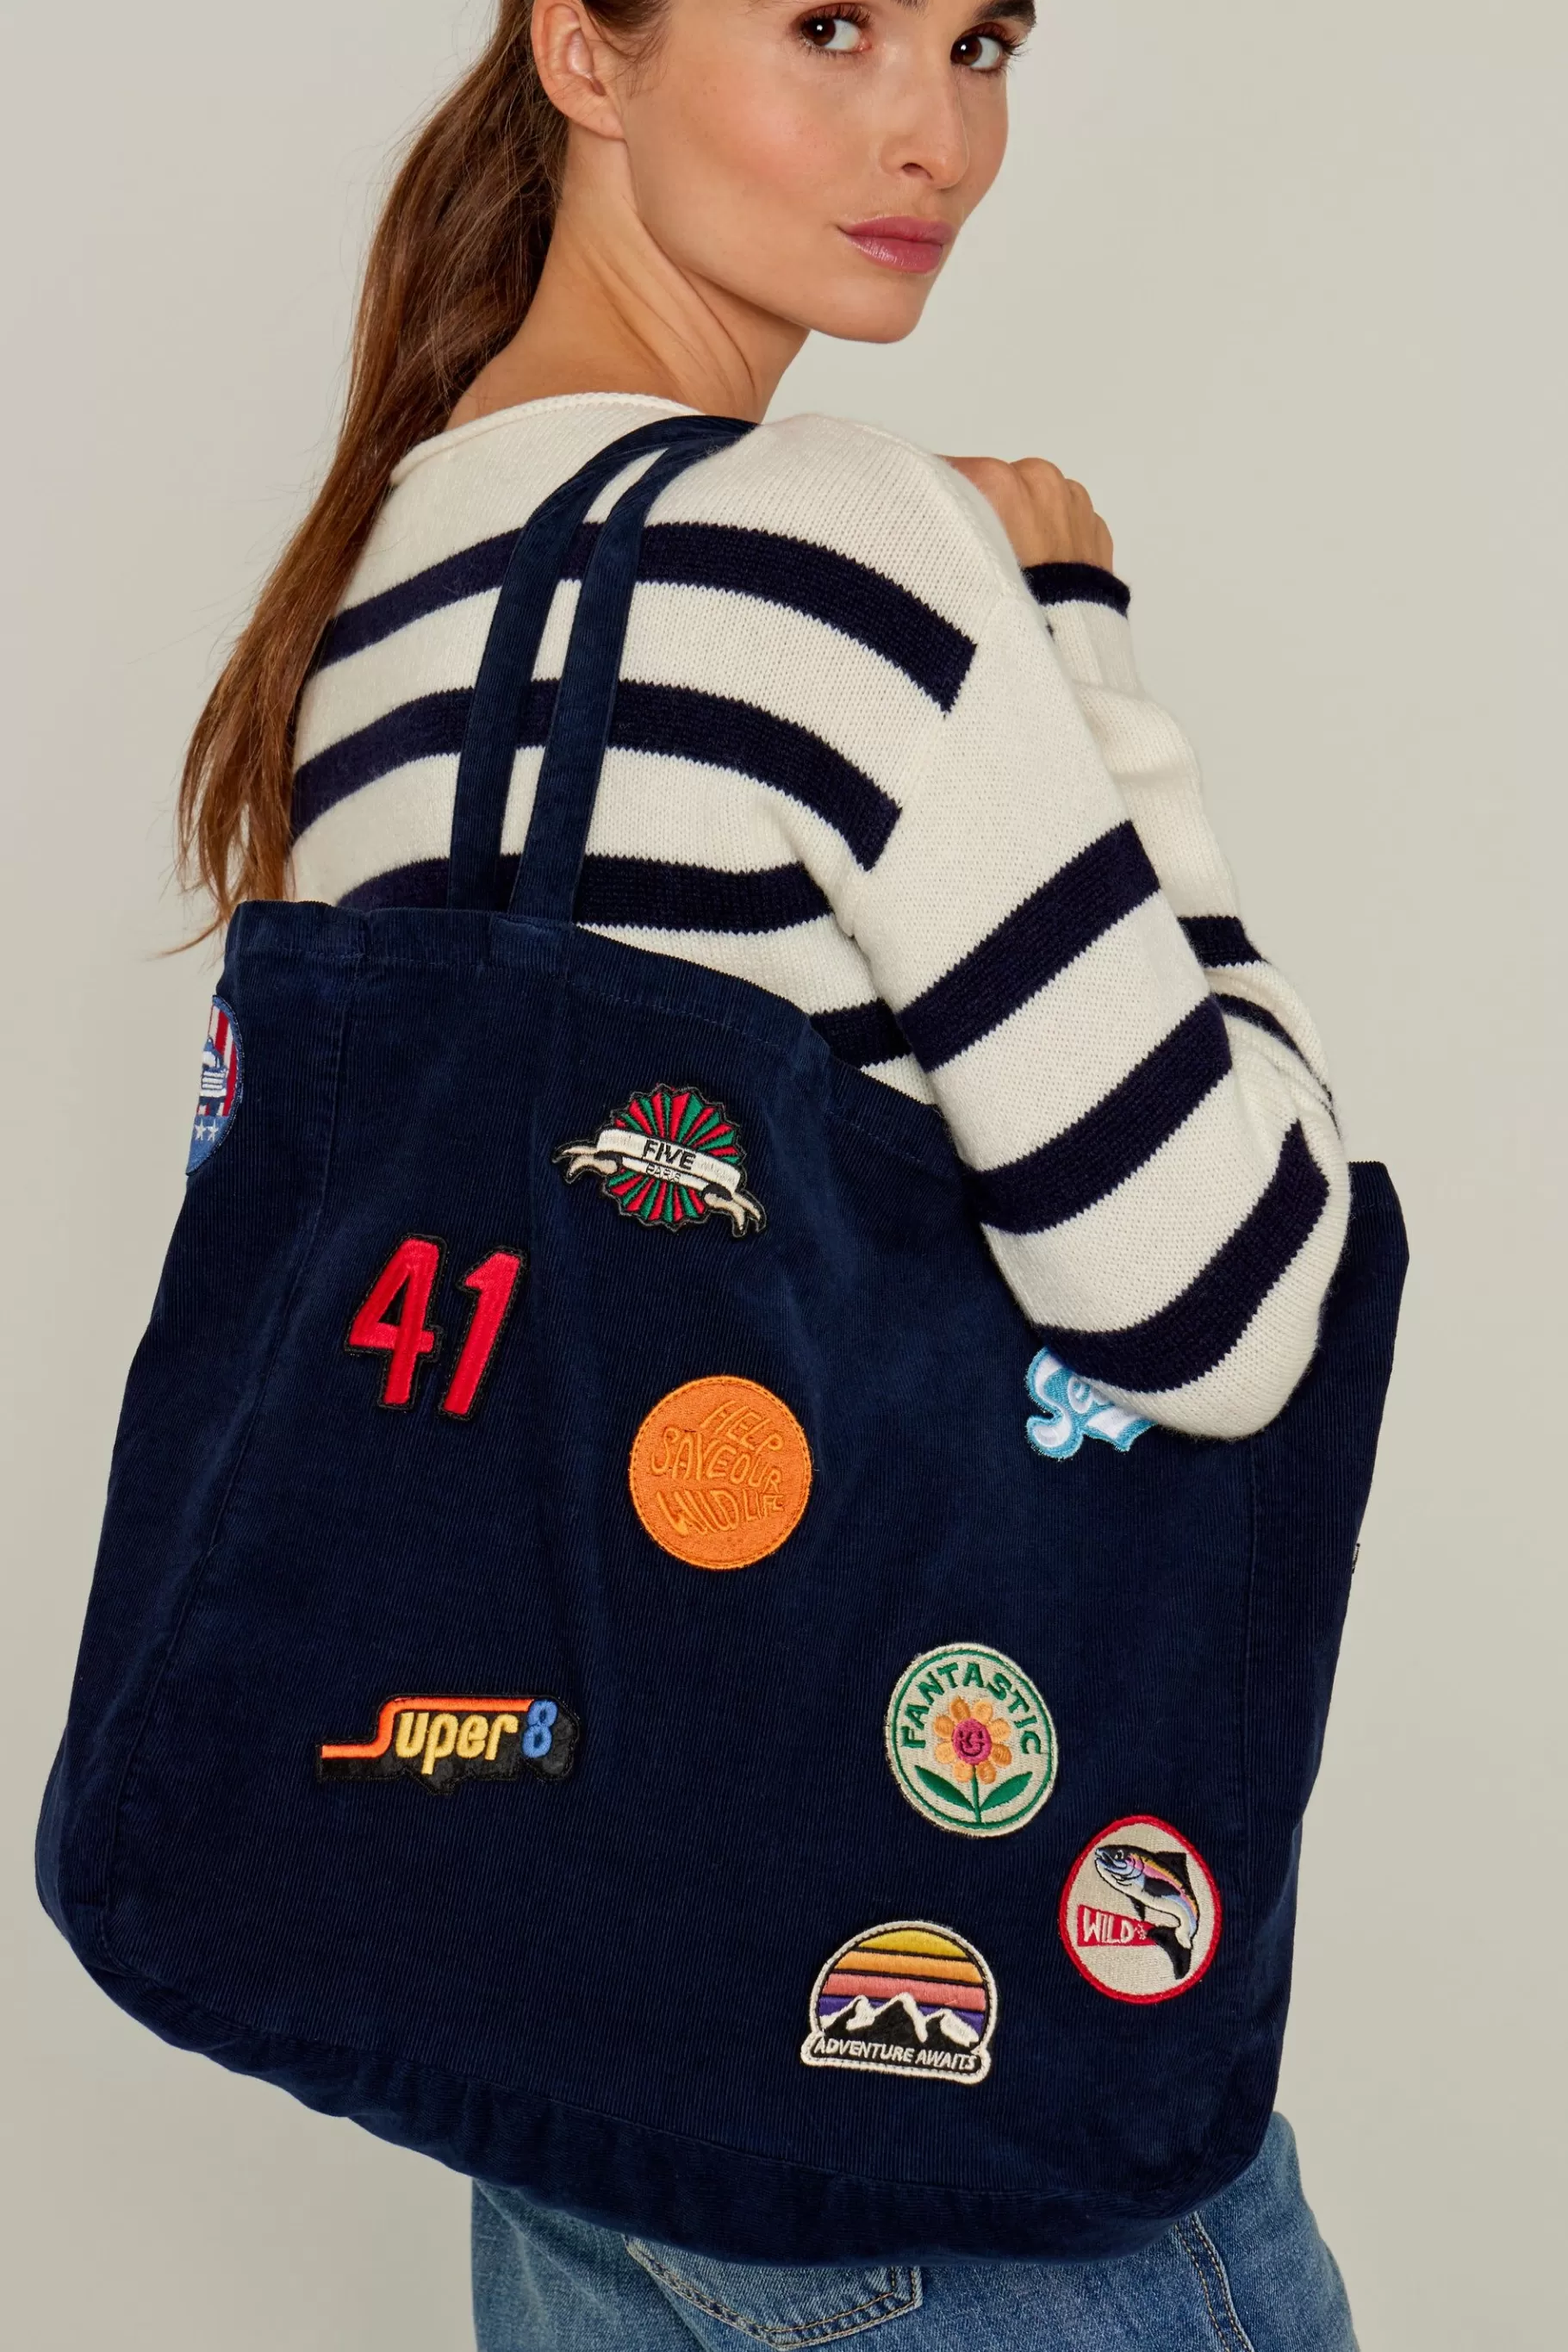 Bag-Five Jeans Badge Bag Navy